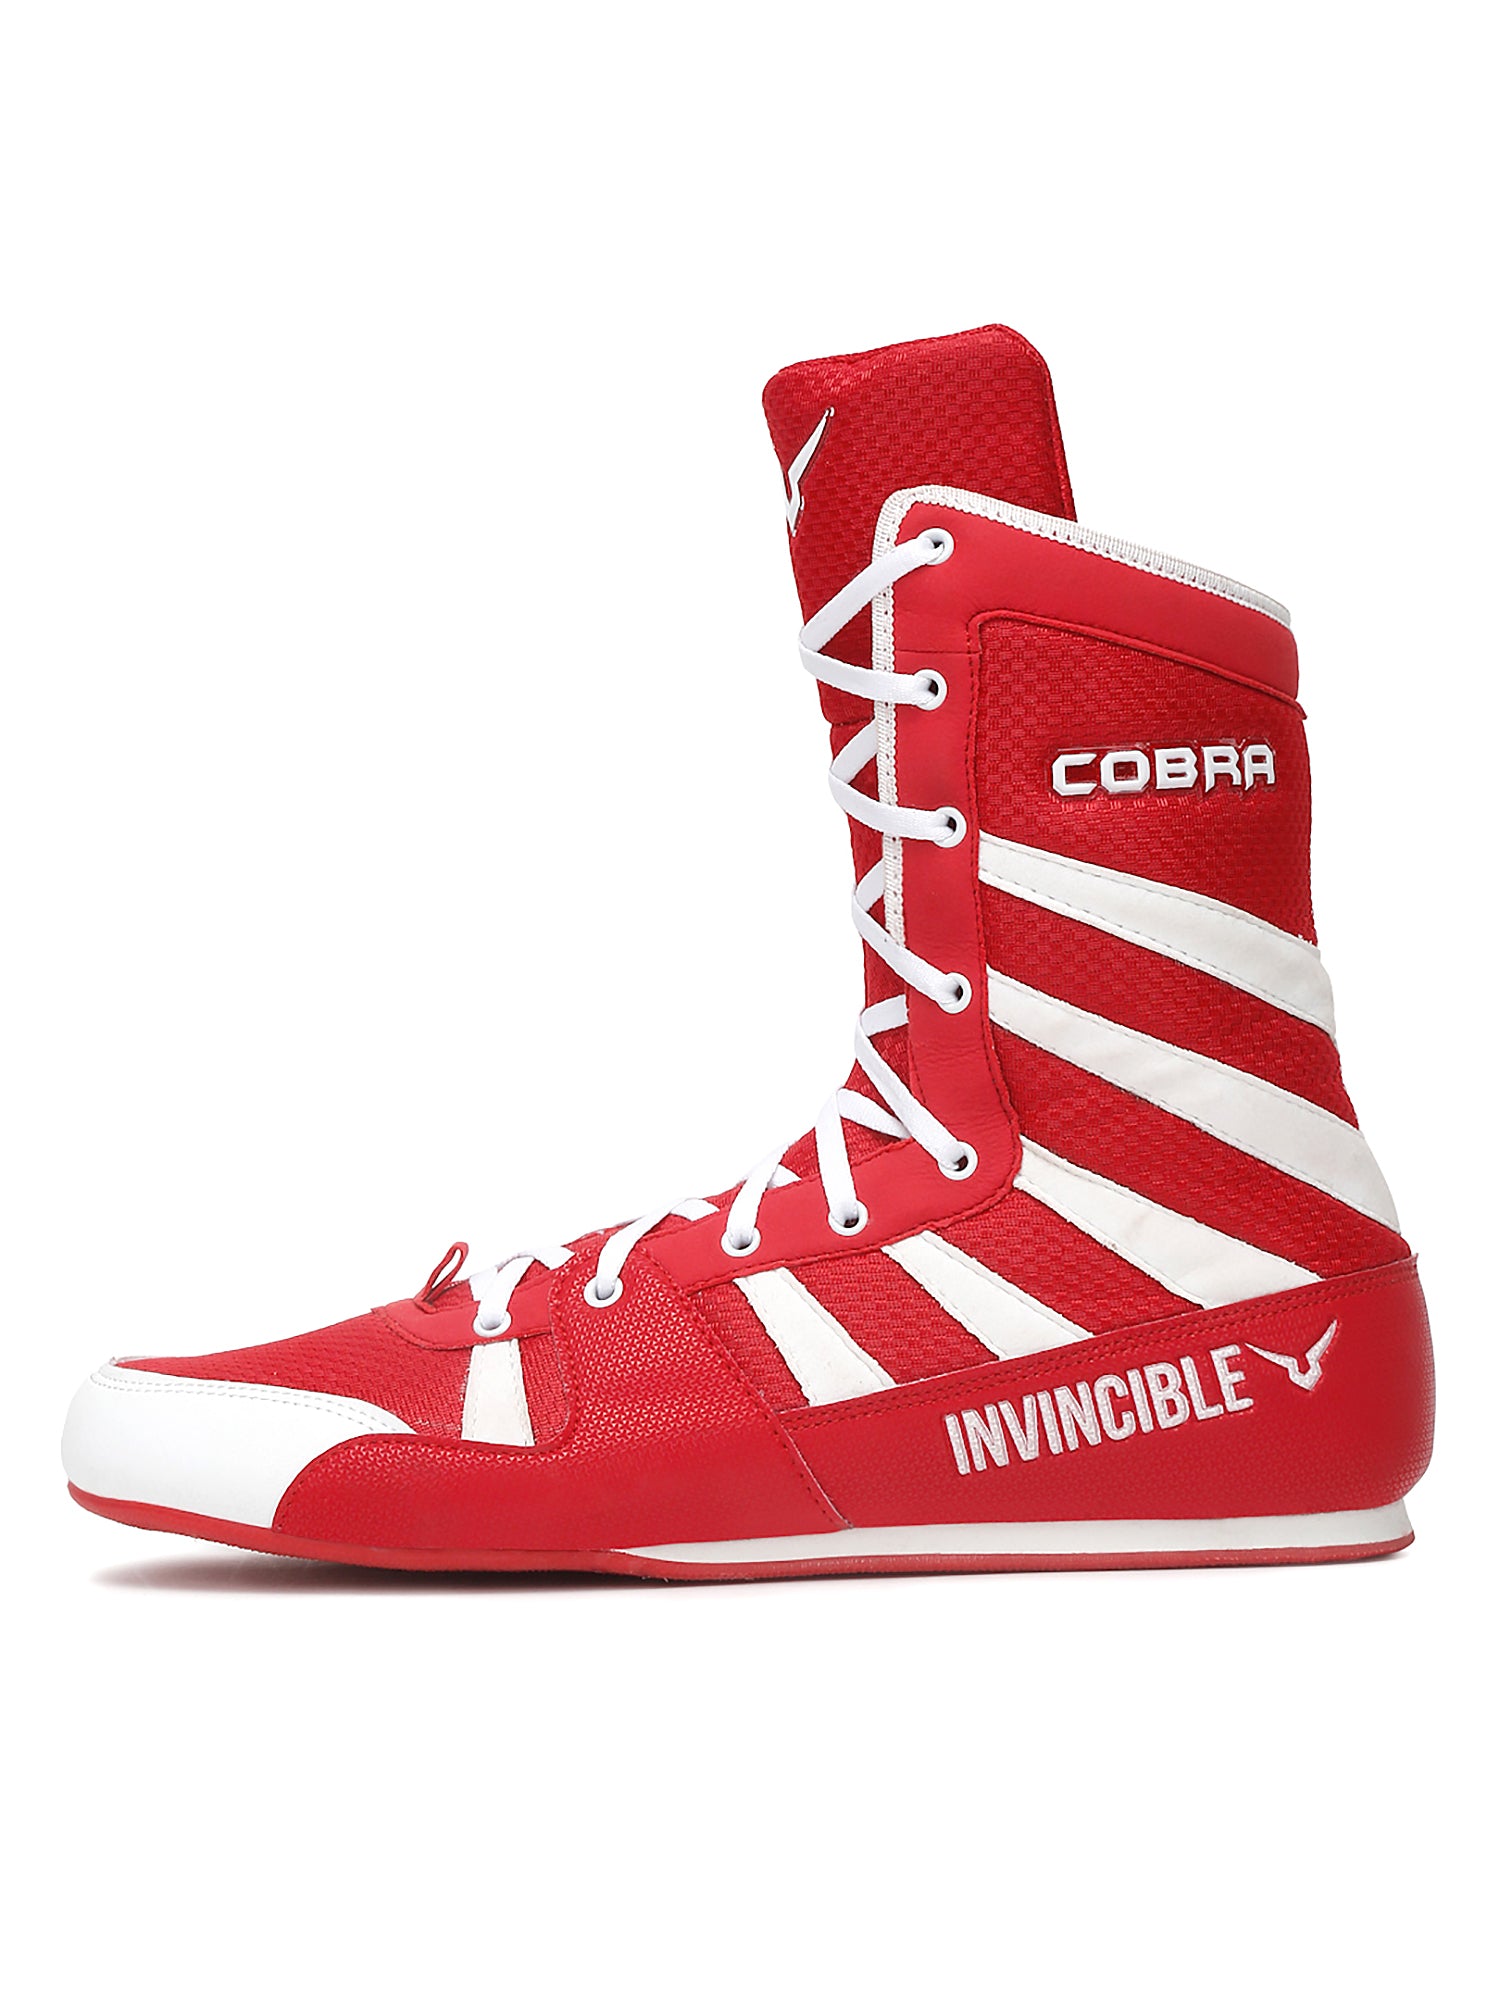 Invincible Cobra Boxing Shoes